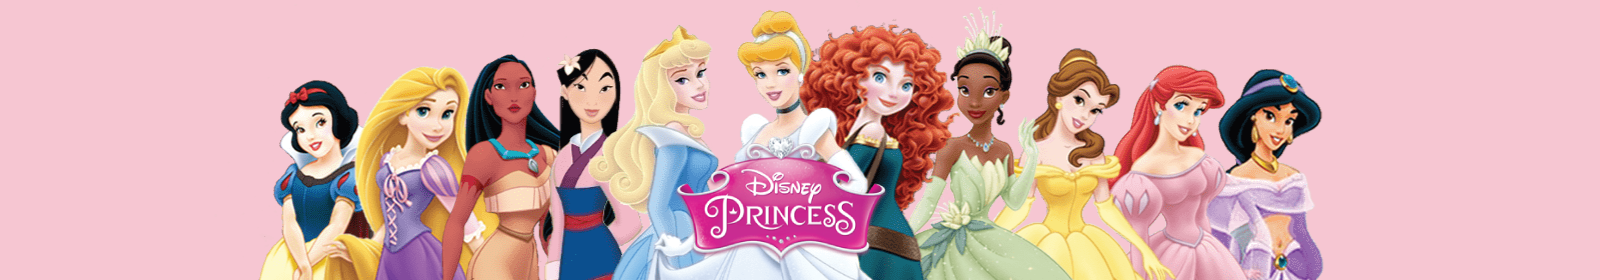 Jogos das princesas disney: Com o melhor preço